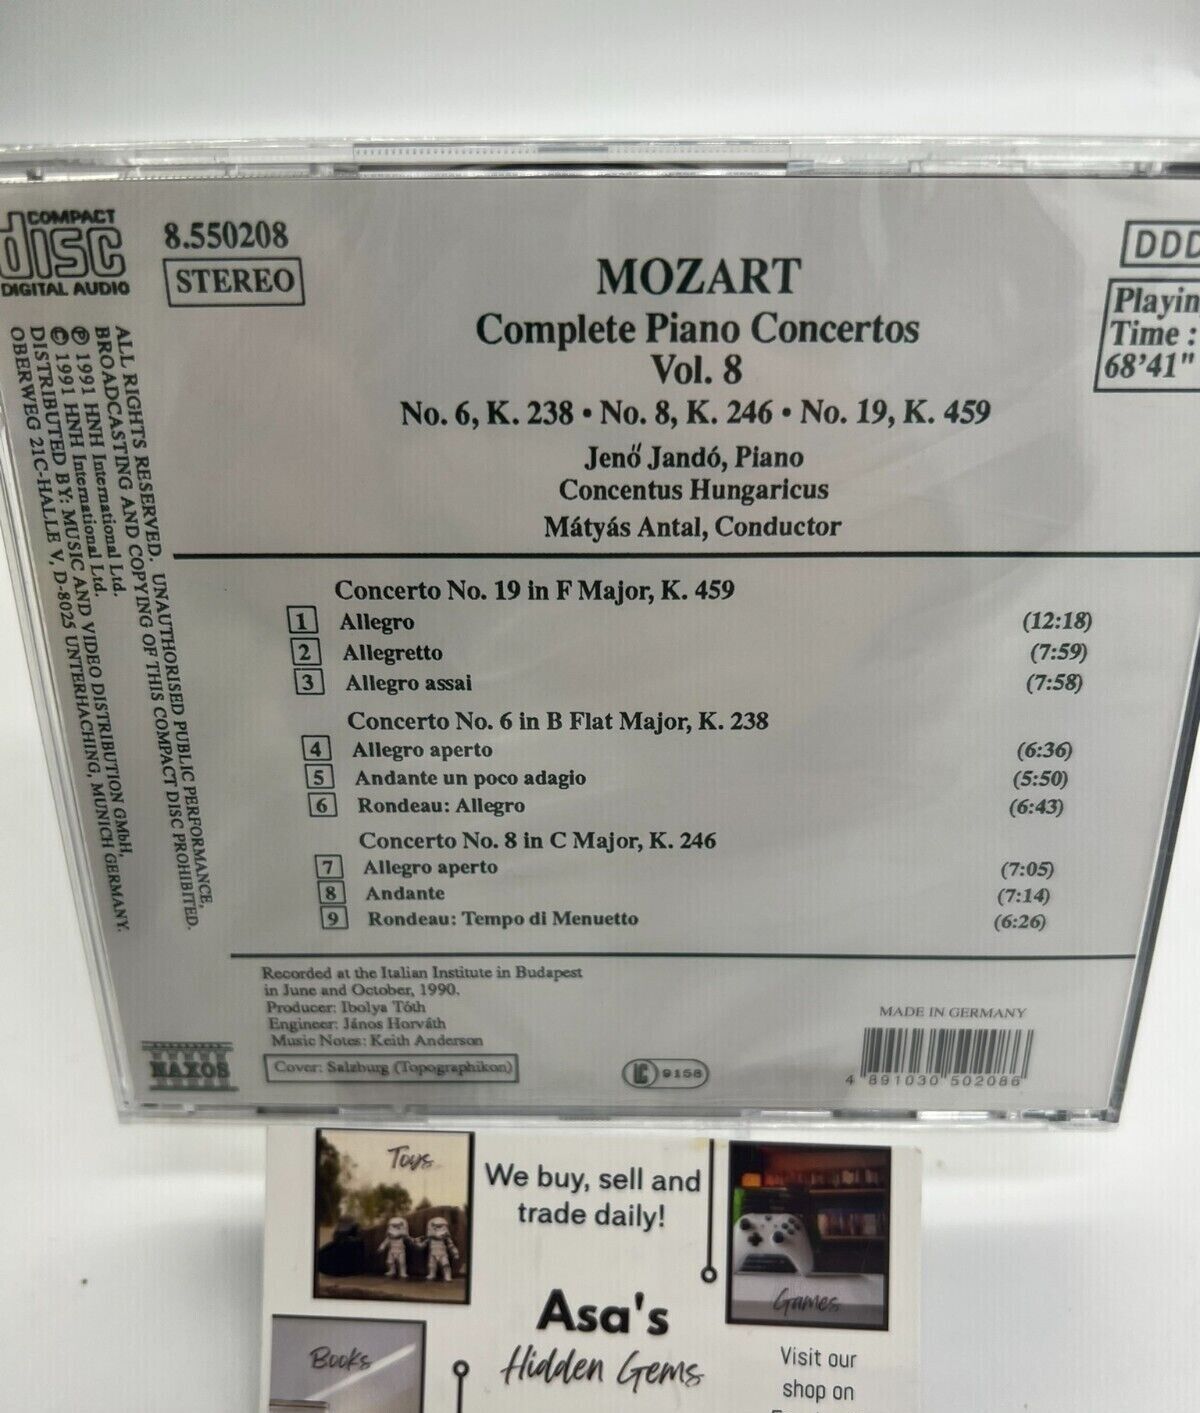 Mozart Complete Piano Concertos vol. 8